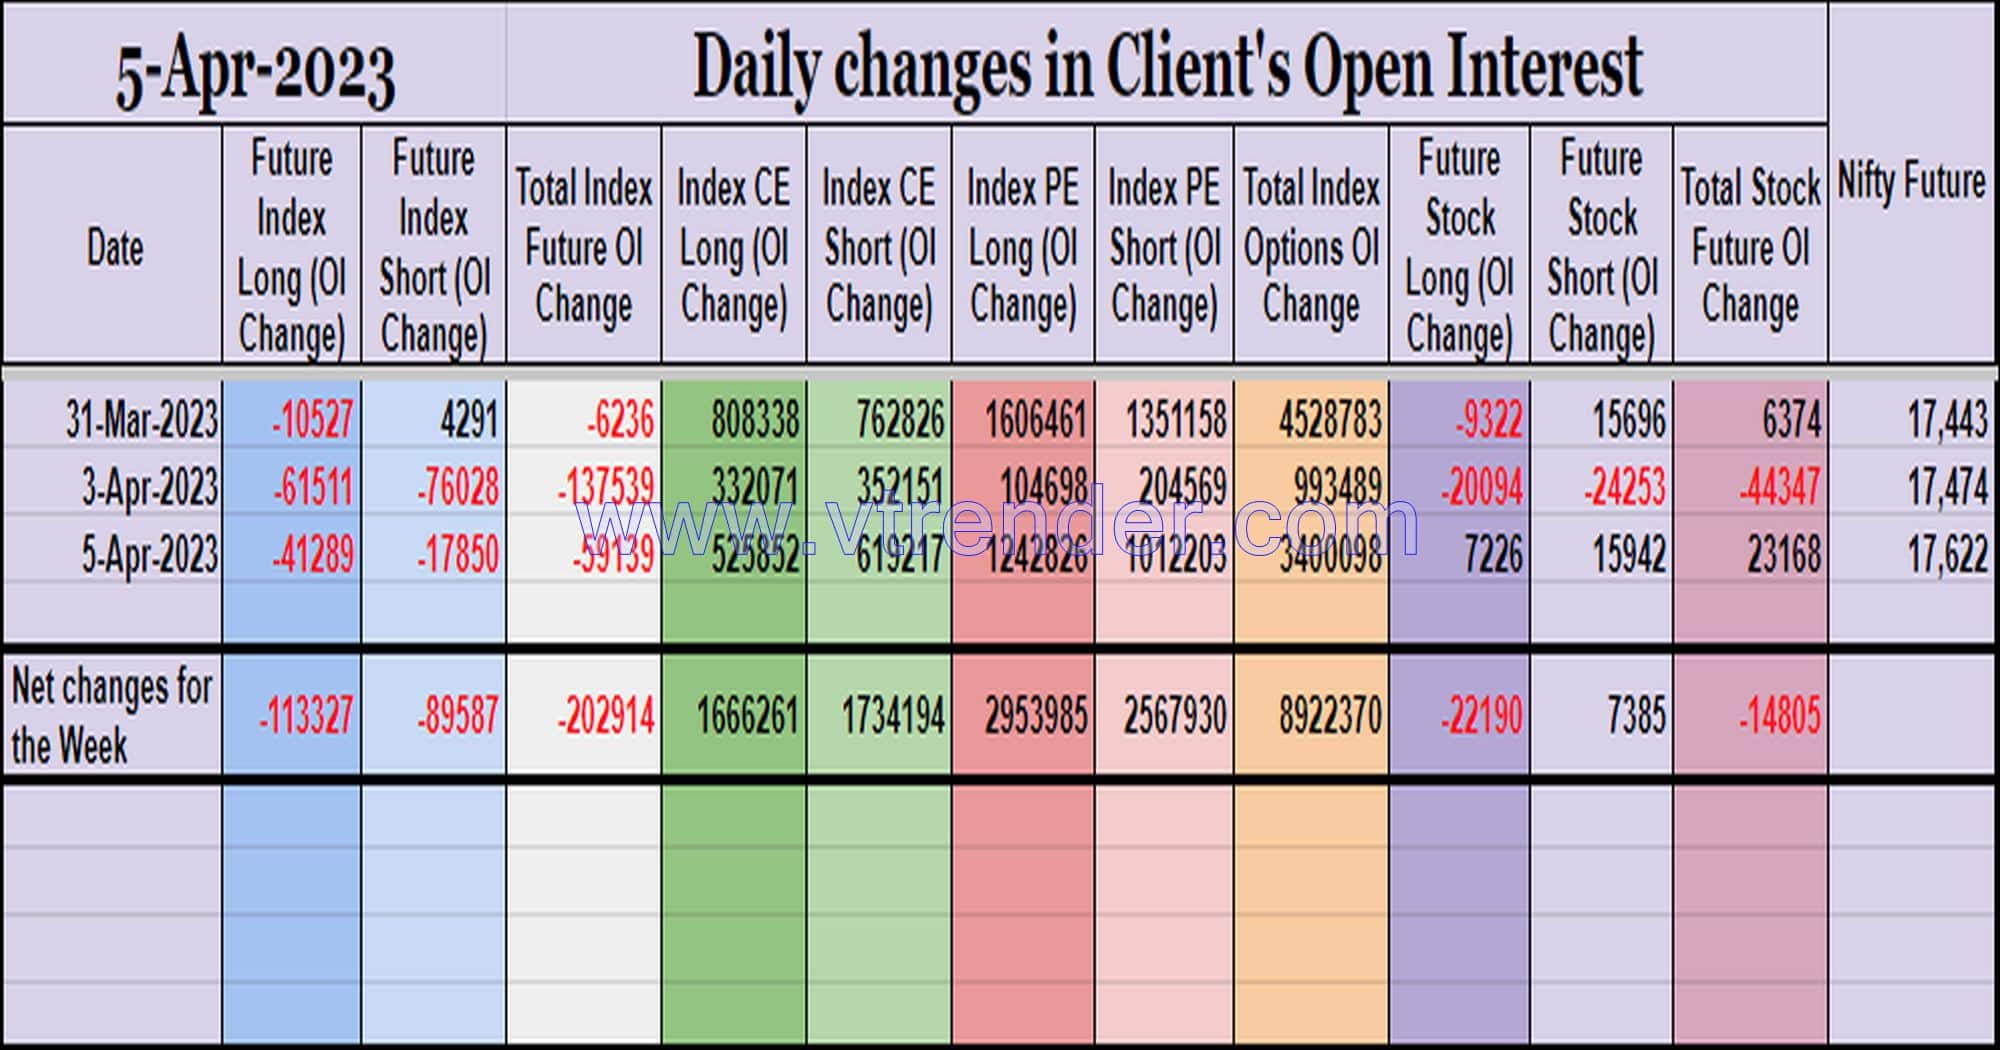 Clientoi05Apr Participantwise Open Interest (Mid-Week Changes) – 5Th Apr 2023 Client, Dii, Fii, Open Interest, Participantwise Open Interest, Props